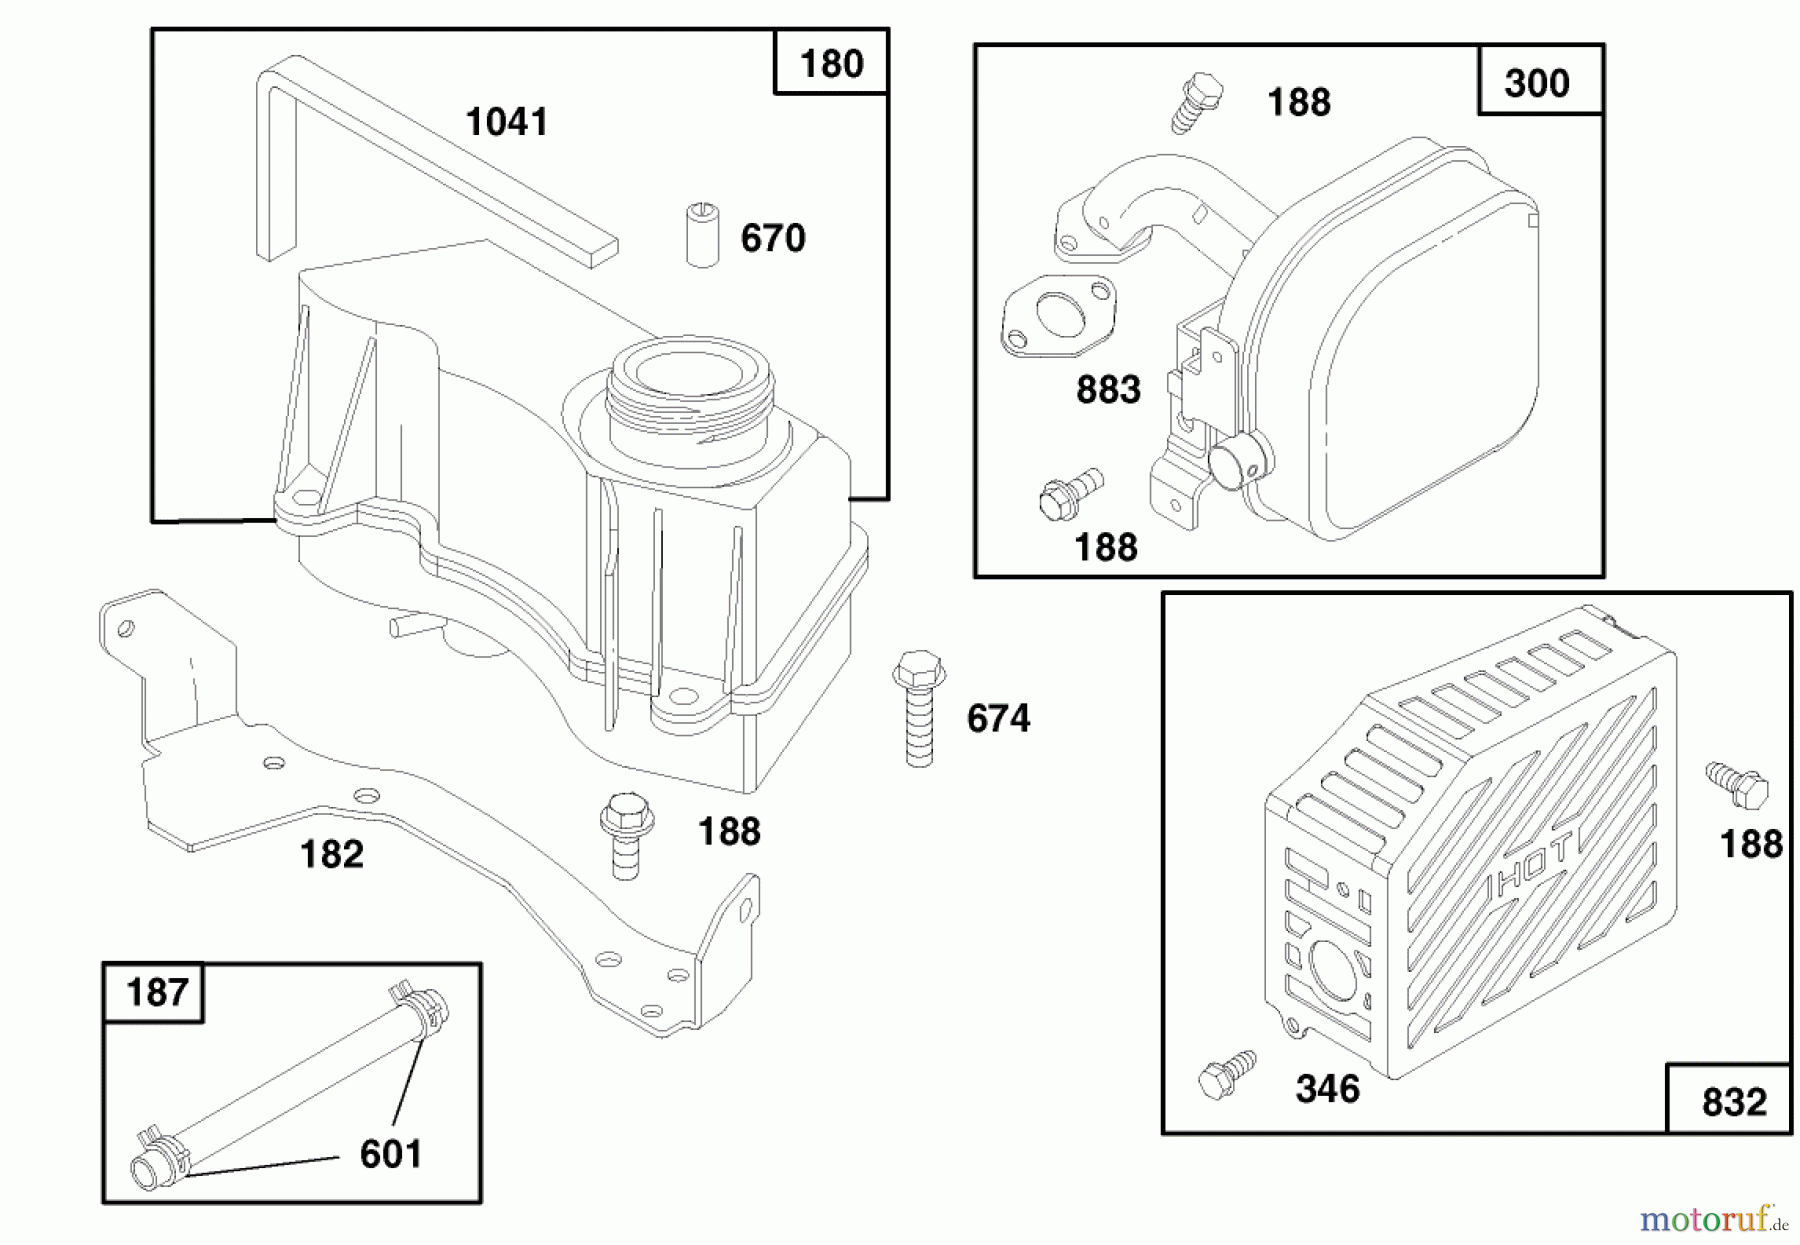  Toro Neu Mowers, Walk-Behind Seite 1 20465 - Toro Lawnmower, 1996 (6900001-6999999) ENGINE GTS 150 (MODEL NO. 20465 ONLY) #7